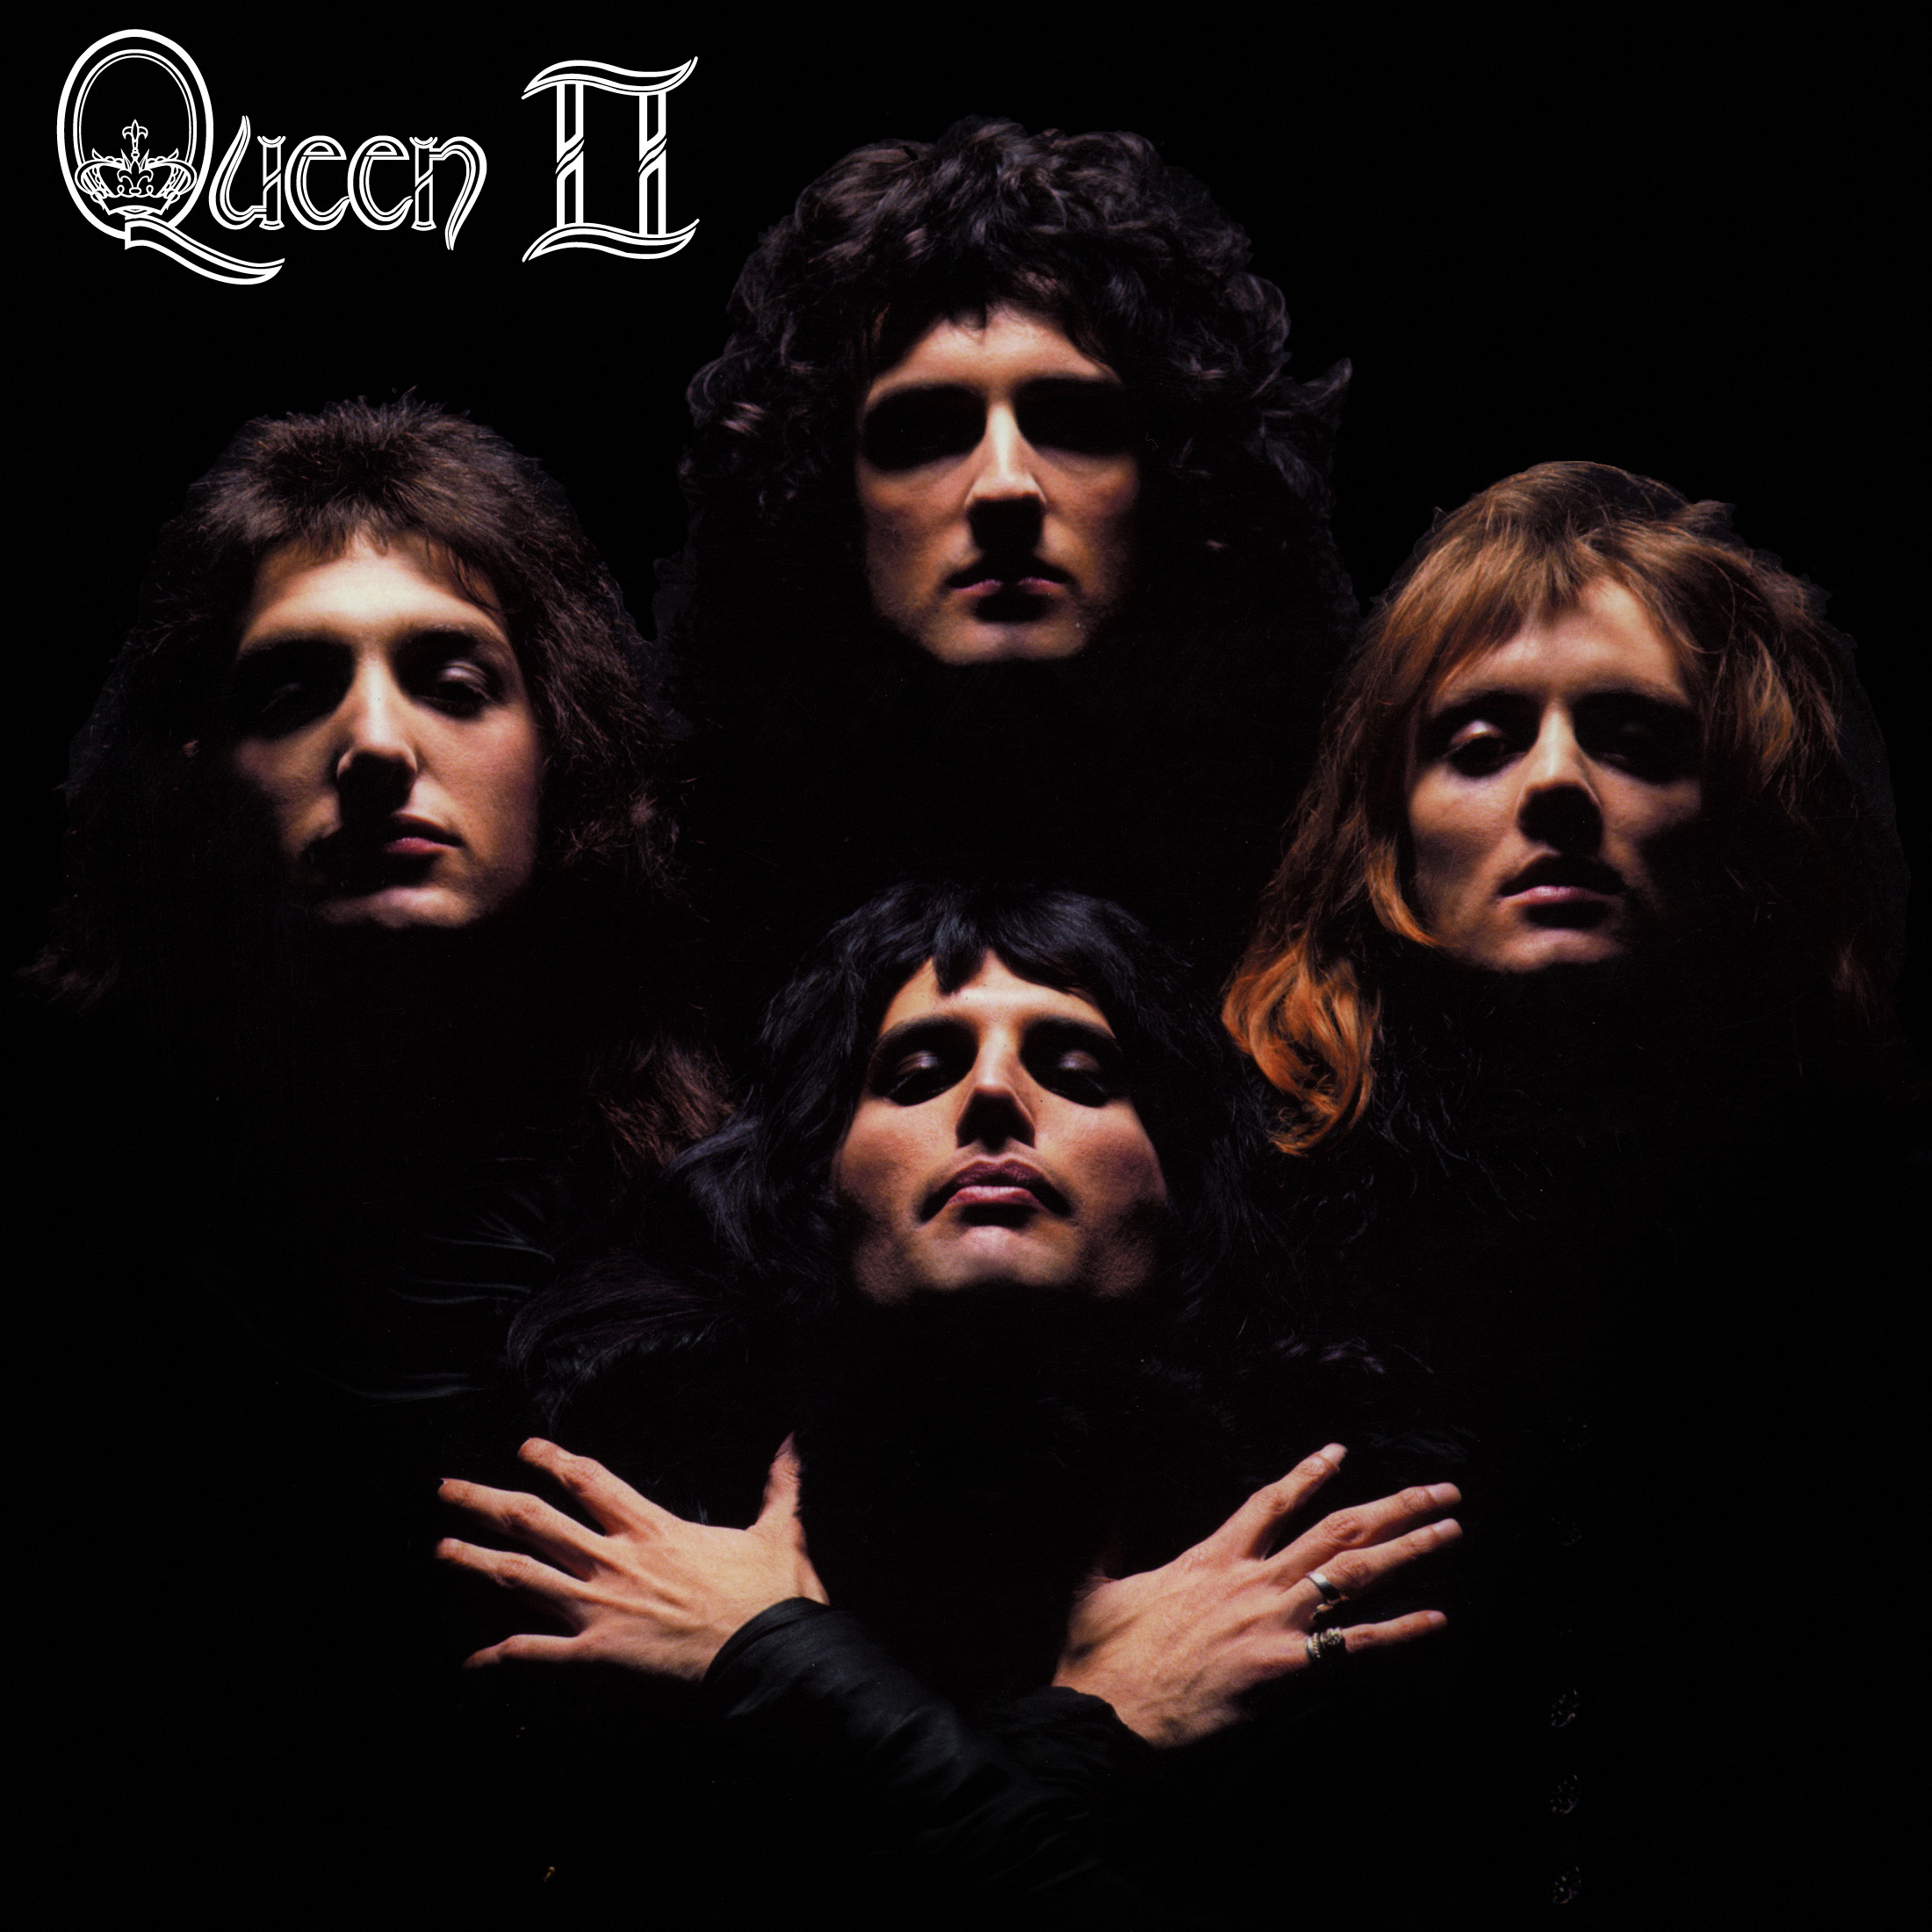 Classic, Rock music, Queen music band, album covers, faces, 1974, 70's, Queen II - desktop wallpaper